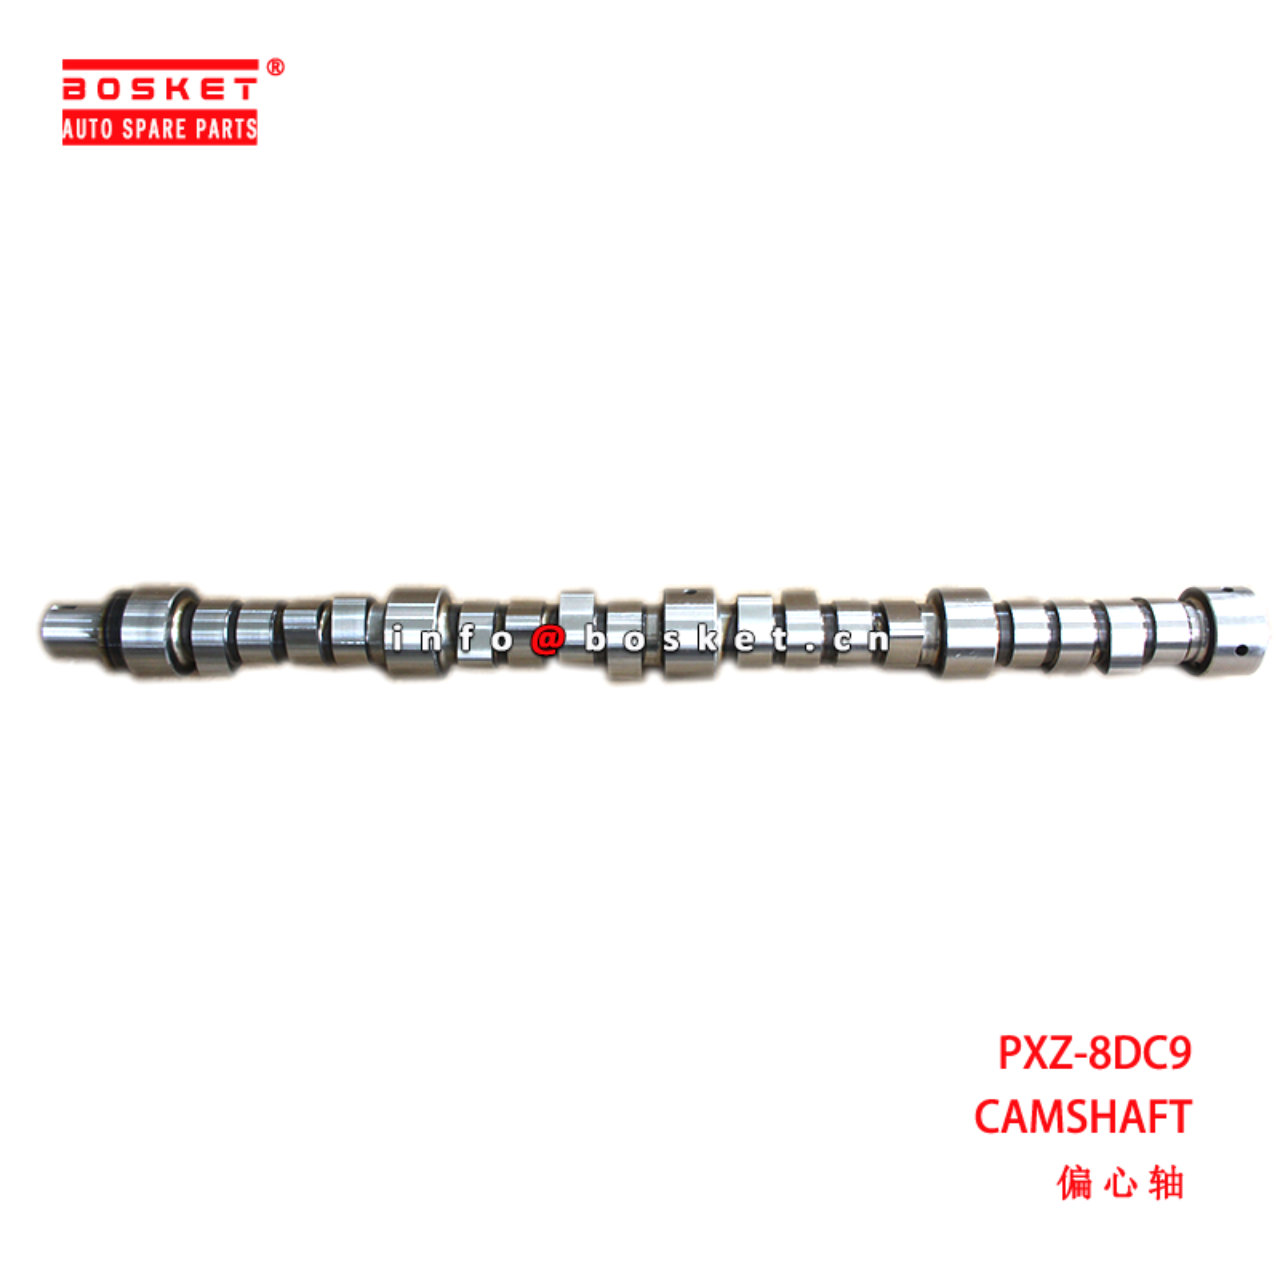 PXZ-8DC9 Camshaft suitable for ISUZU  8DC9 PXZ-8DC...